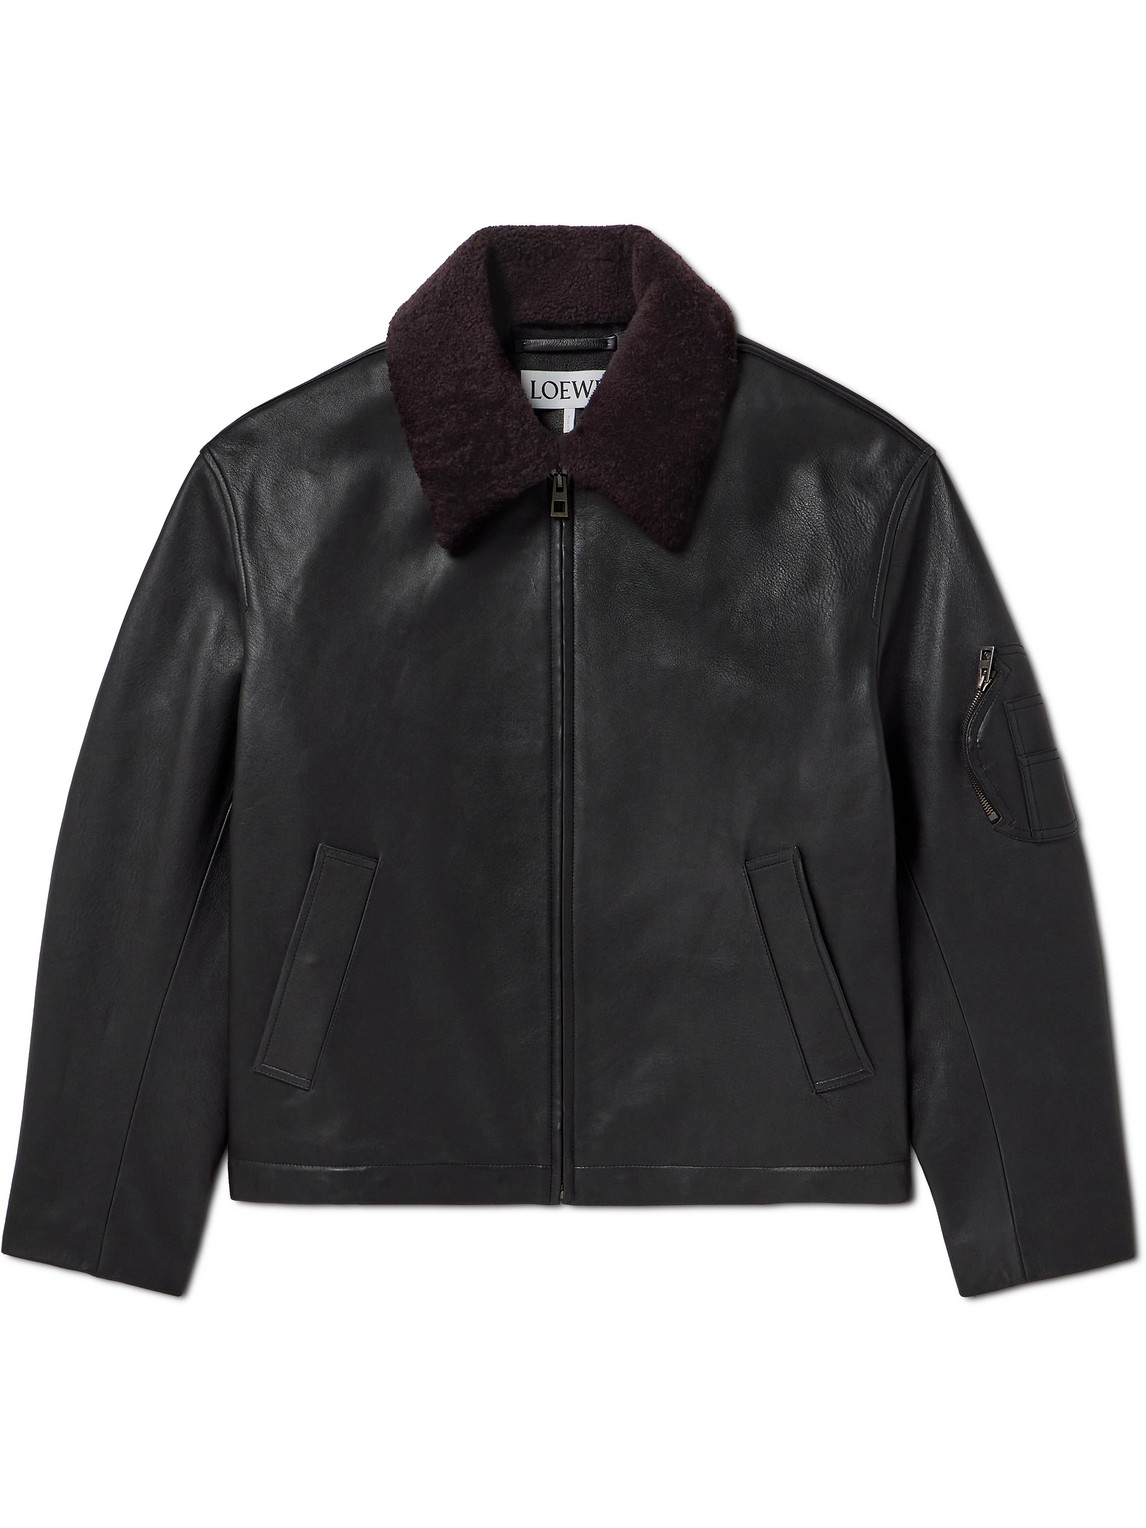 LOEWE - Appliquéd Shearling-Trimmed Leather Jacket - Men - Black - IT 54 von LOEWE